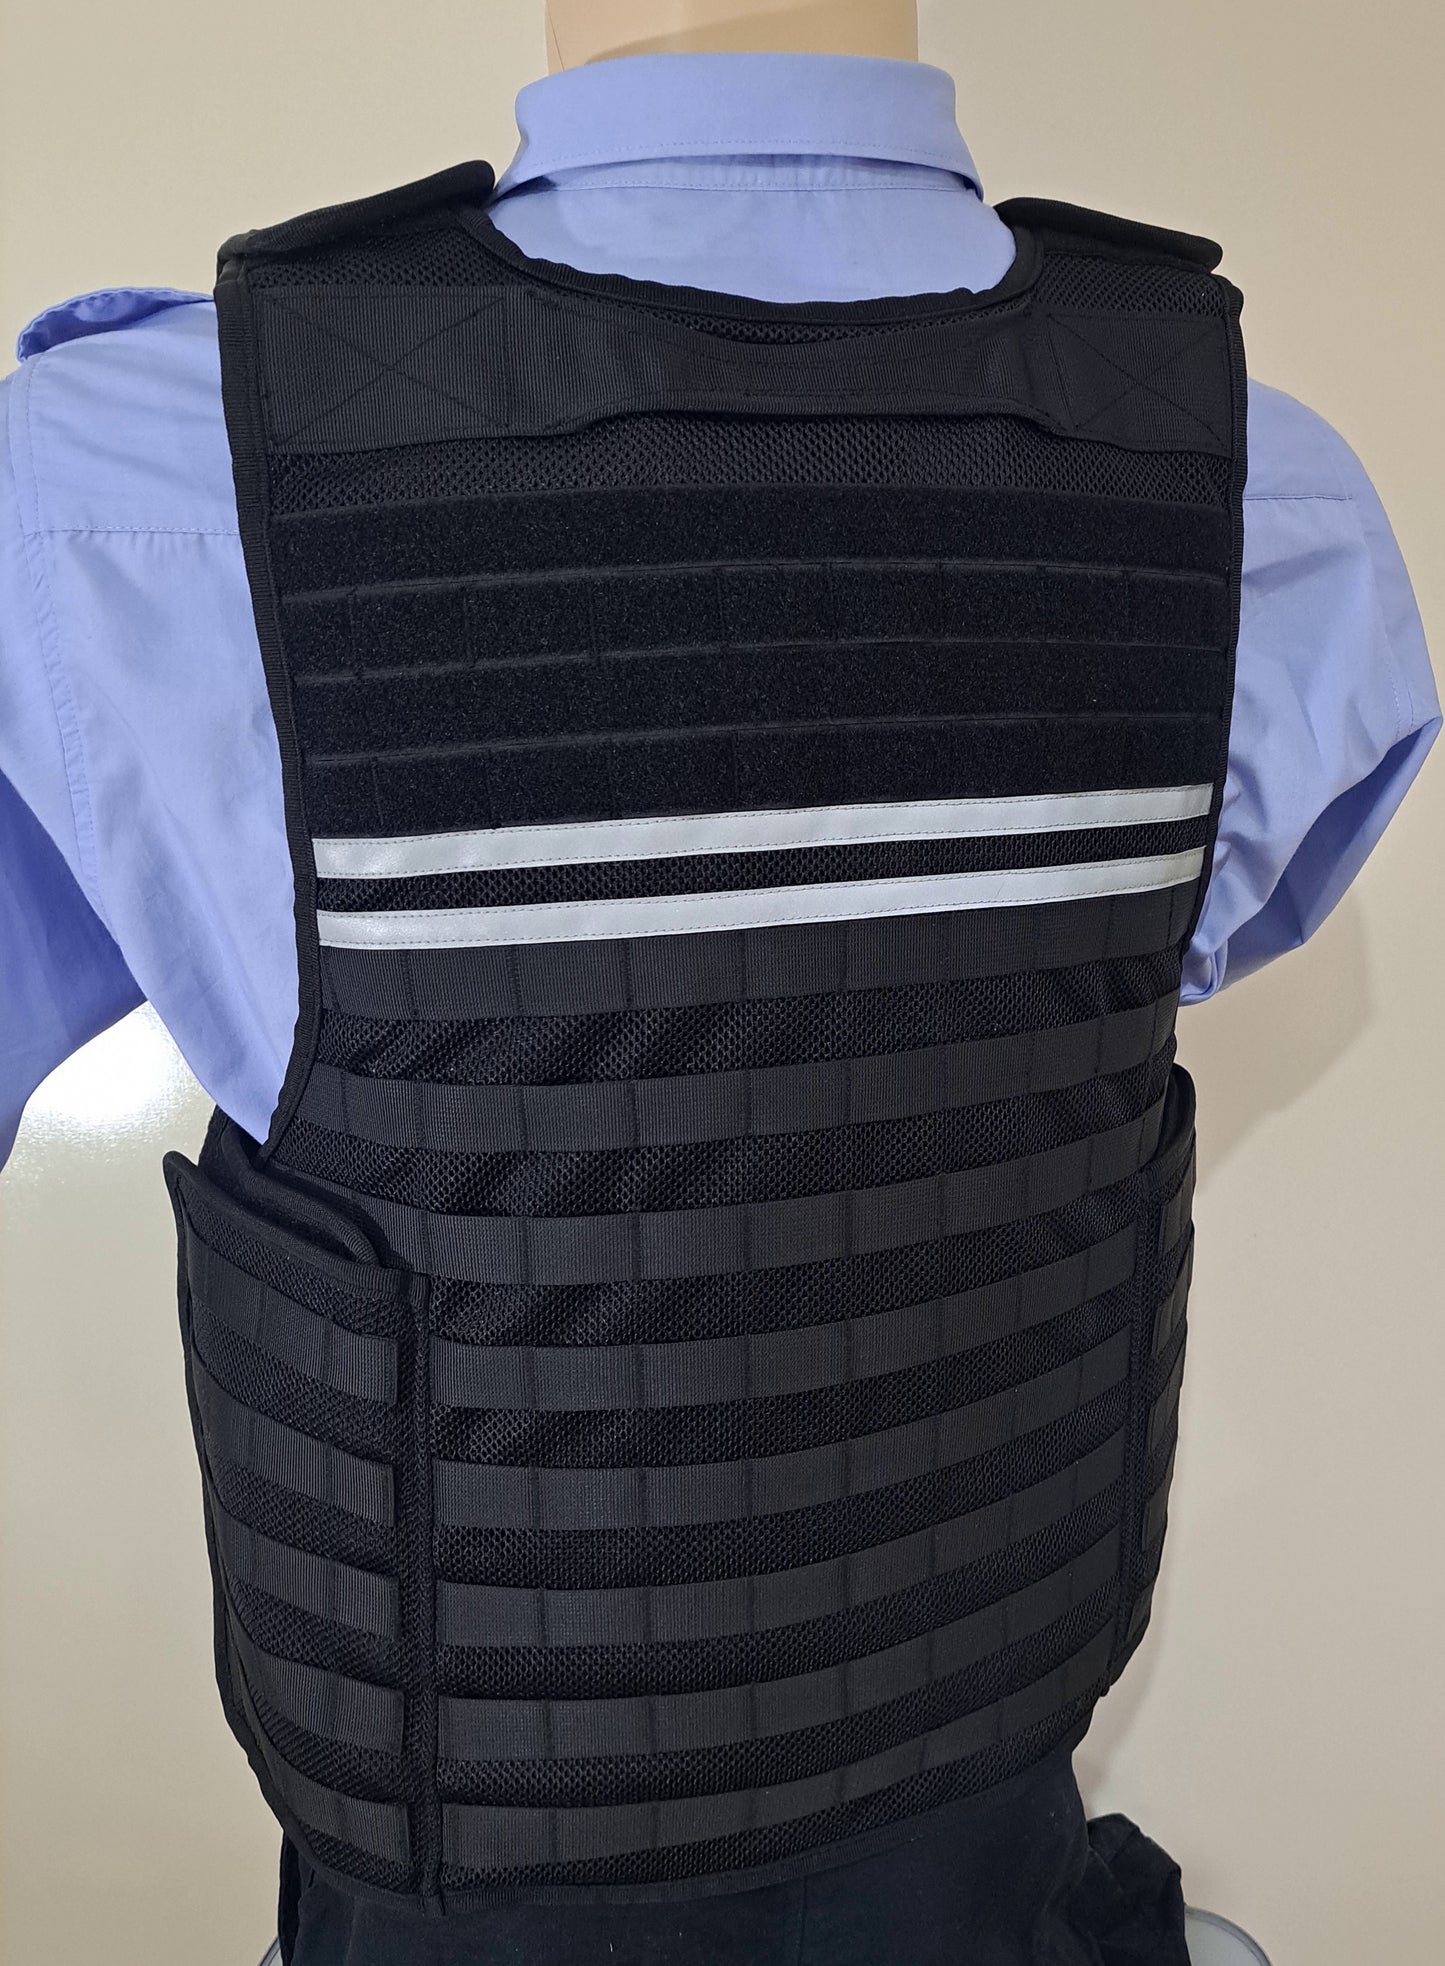 DEFENDER-3  The Latest Design Defender Stab Protection Vest